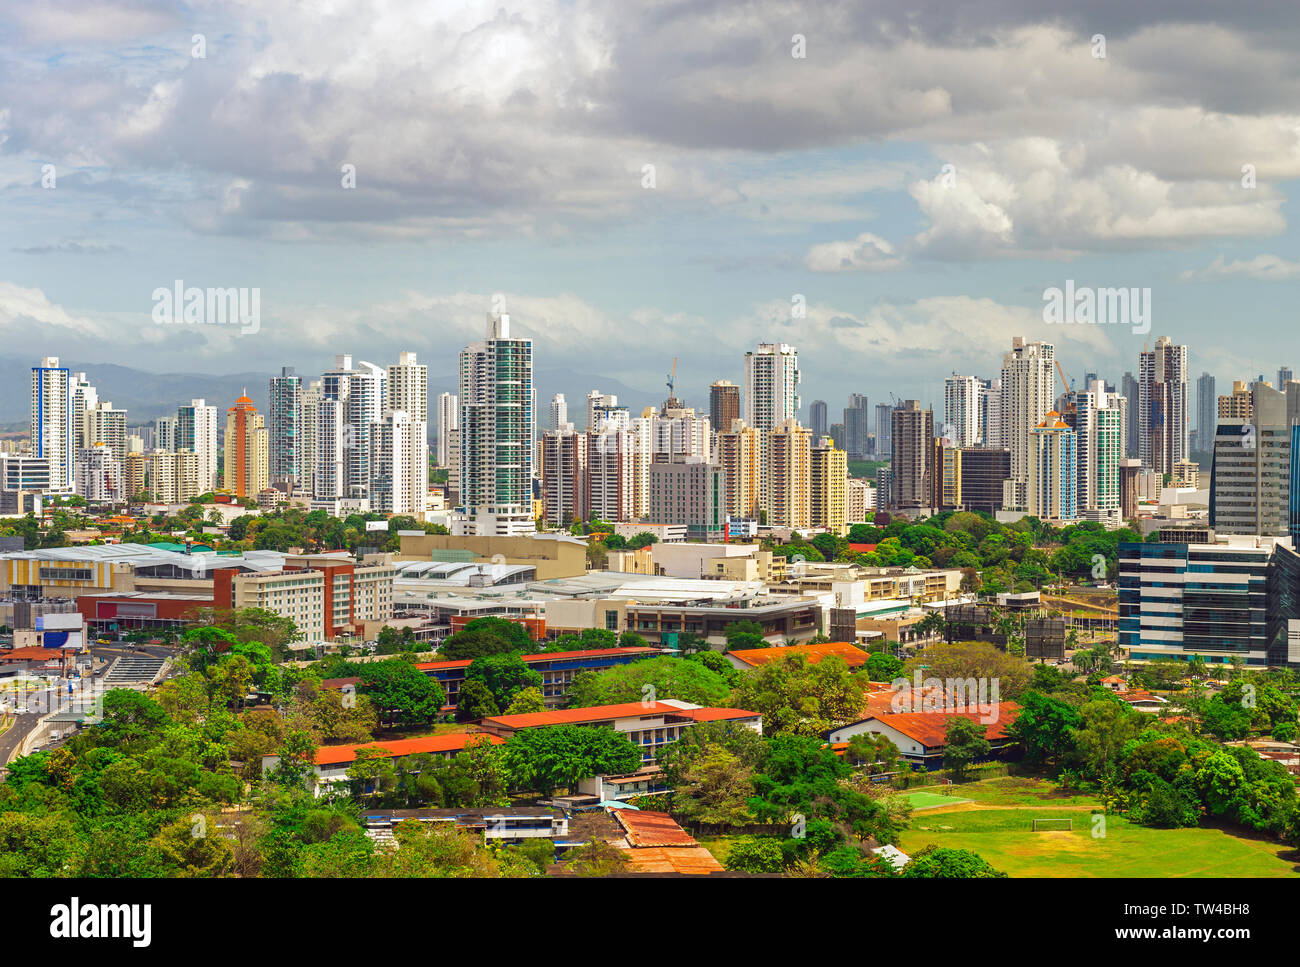 Die Städtischen Skyline von Panama City mit seinen eindrucksvollen Wolkenkratzer bei Sonnenaufgang, Panama. Stockfoto